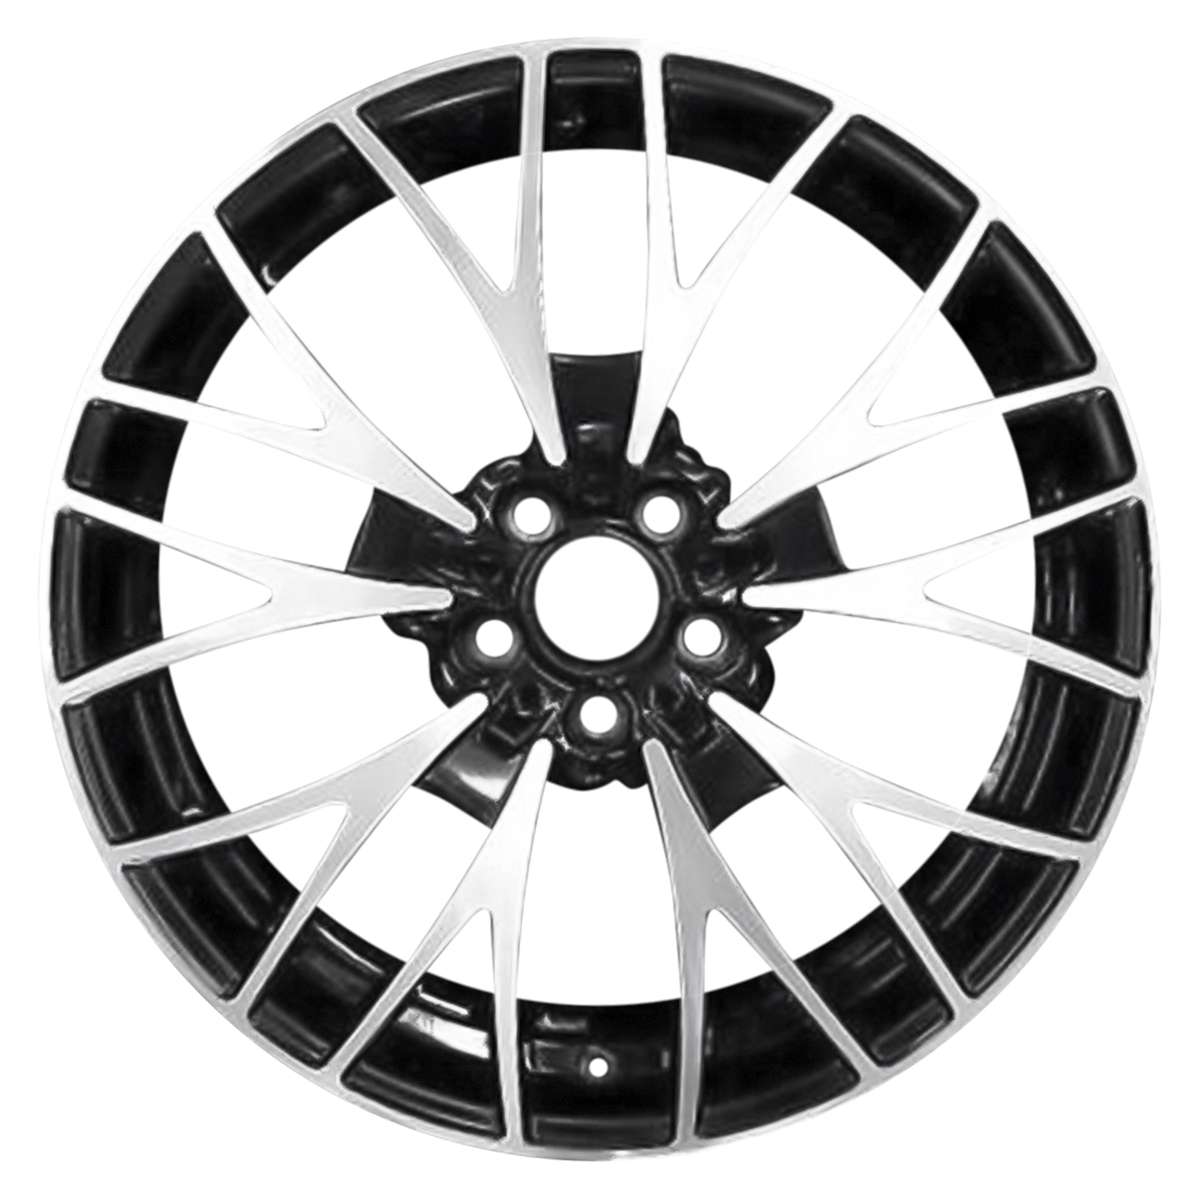 2014 BMW 328i 20" Rear OEM Wheel Rim W71552MB